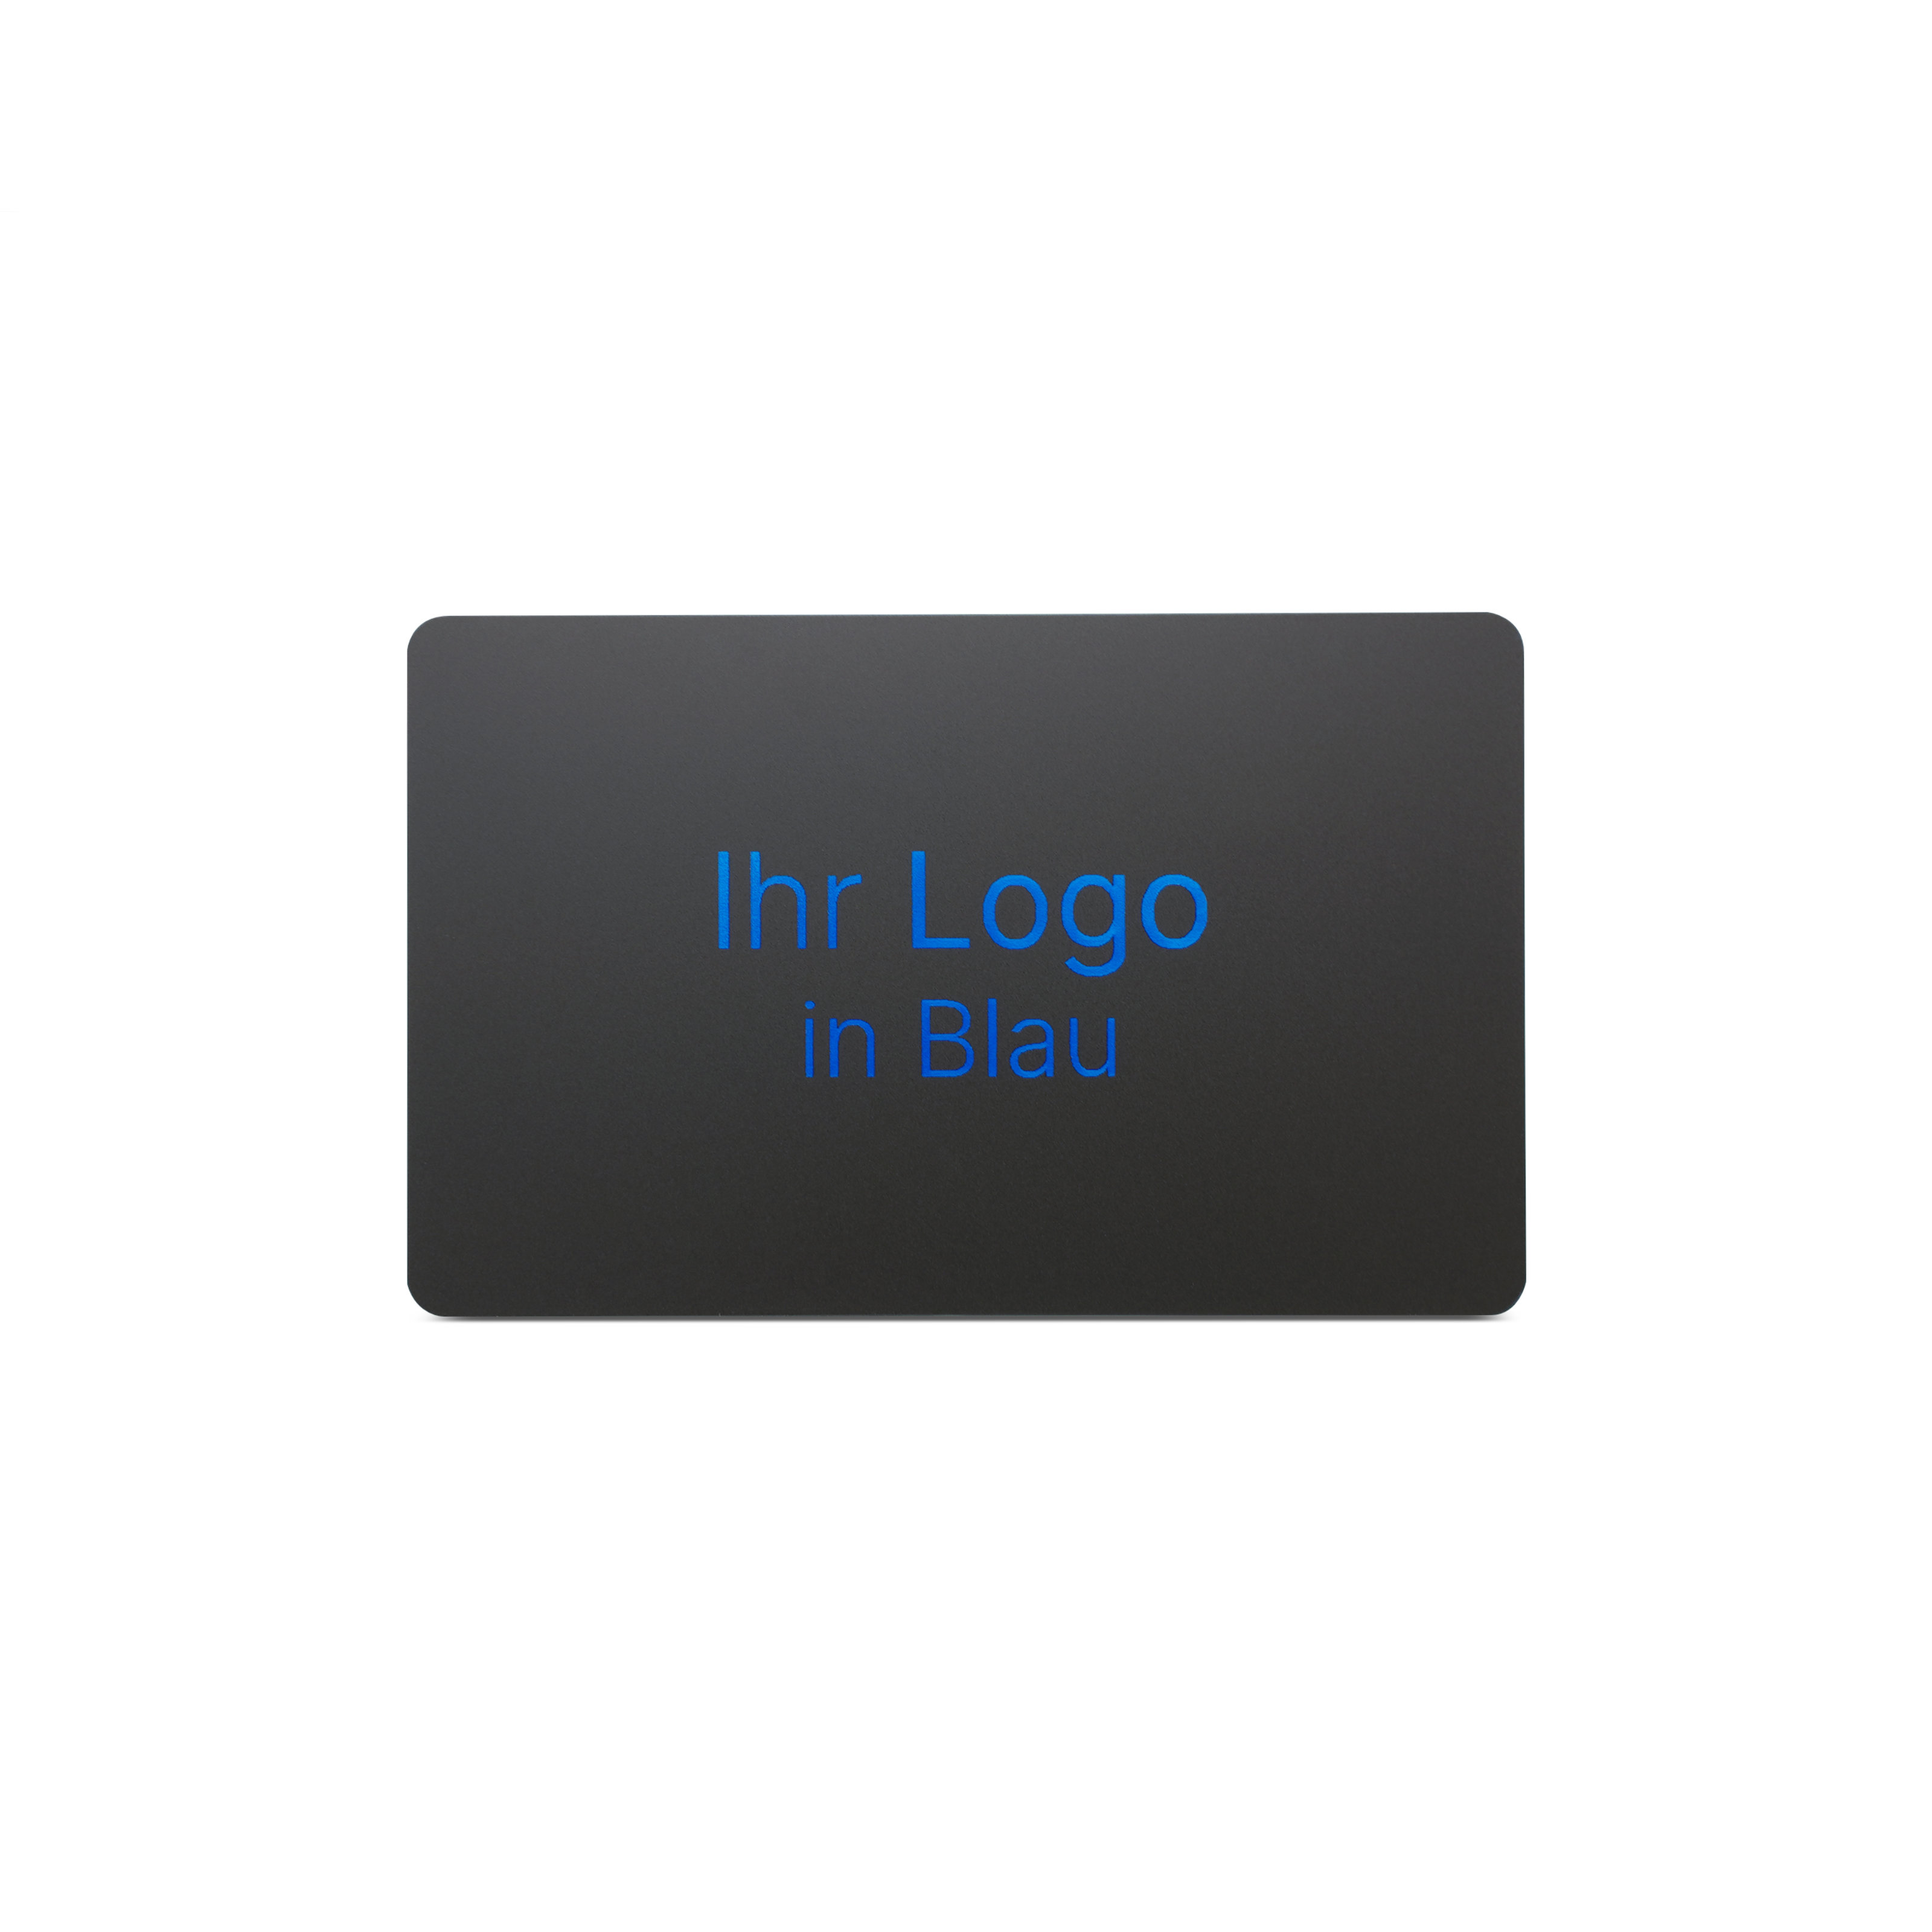 Schwarze NFC Karte aus PVC mit Bedruckung "Ihr Logo in Blau"